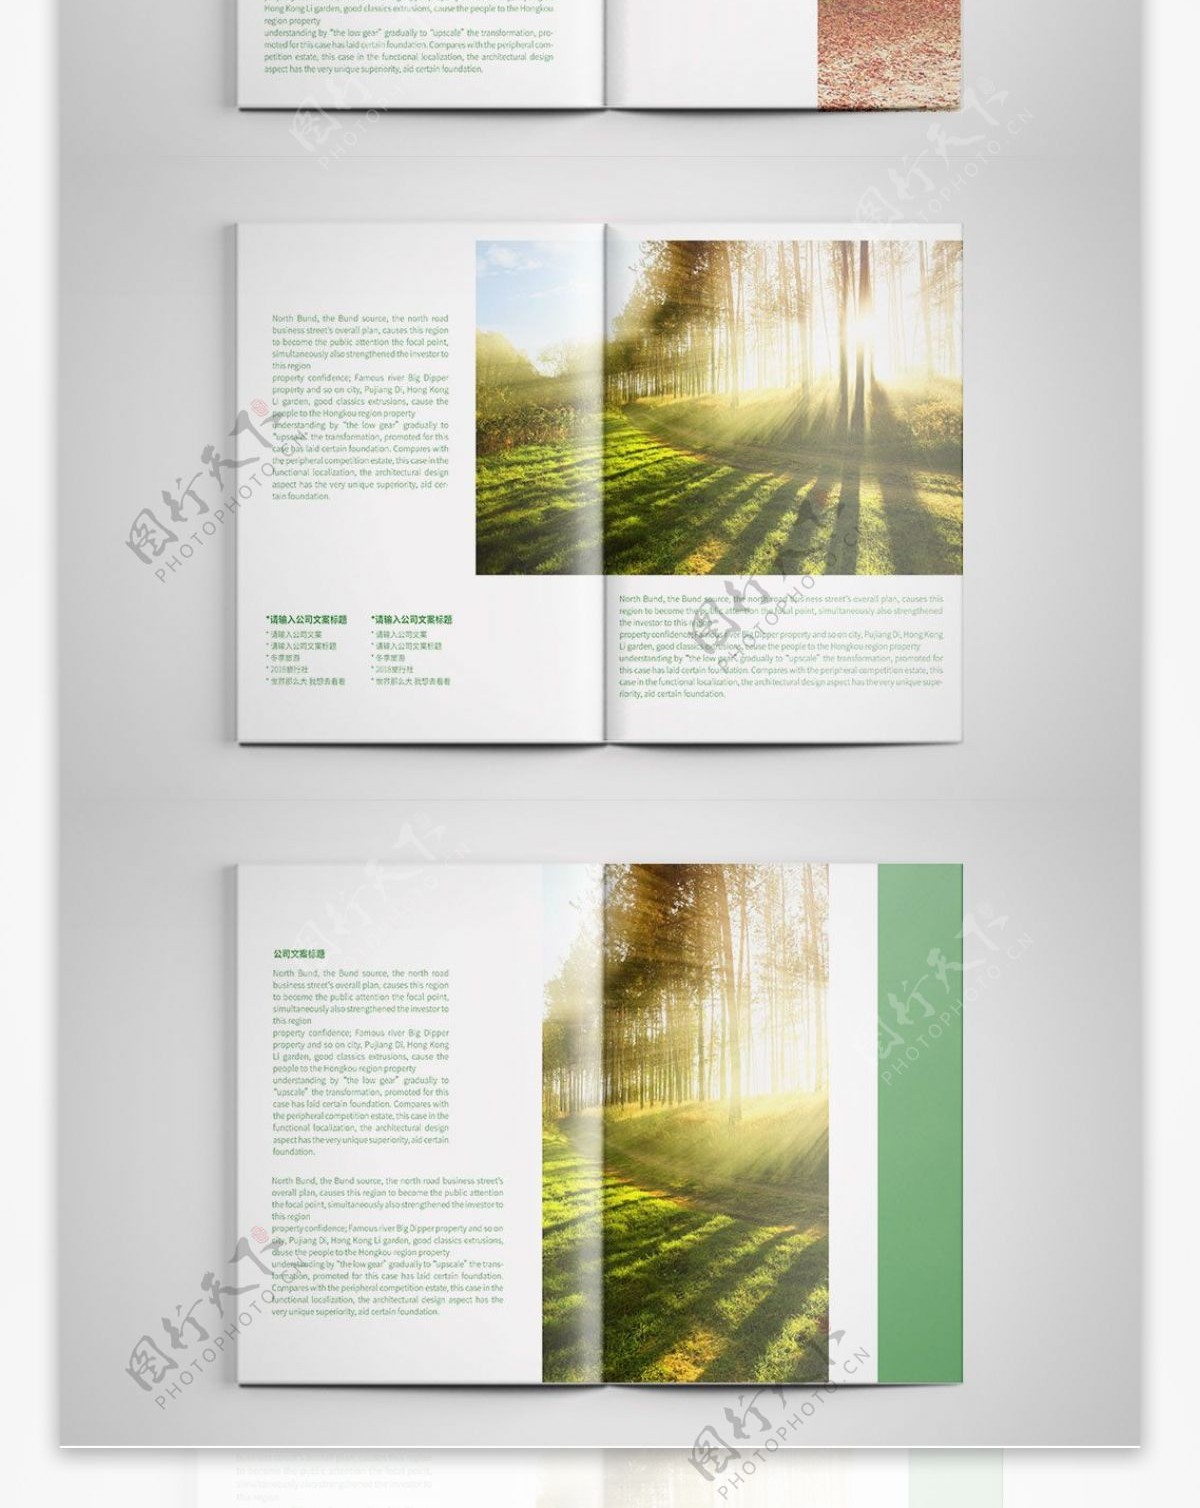 创意绿色森林旅游画册设计PSD模板